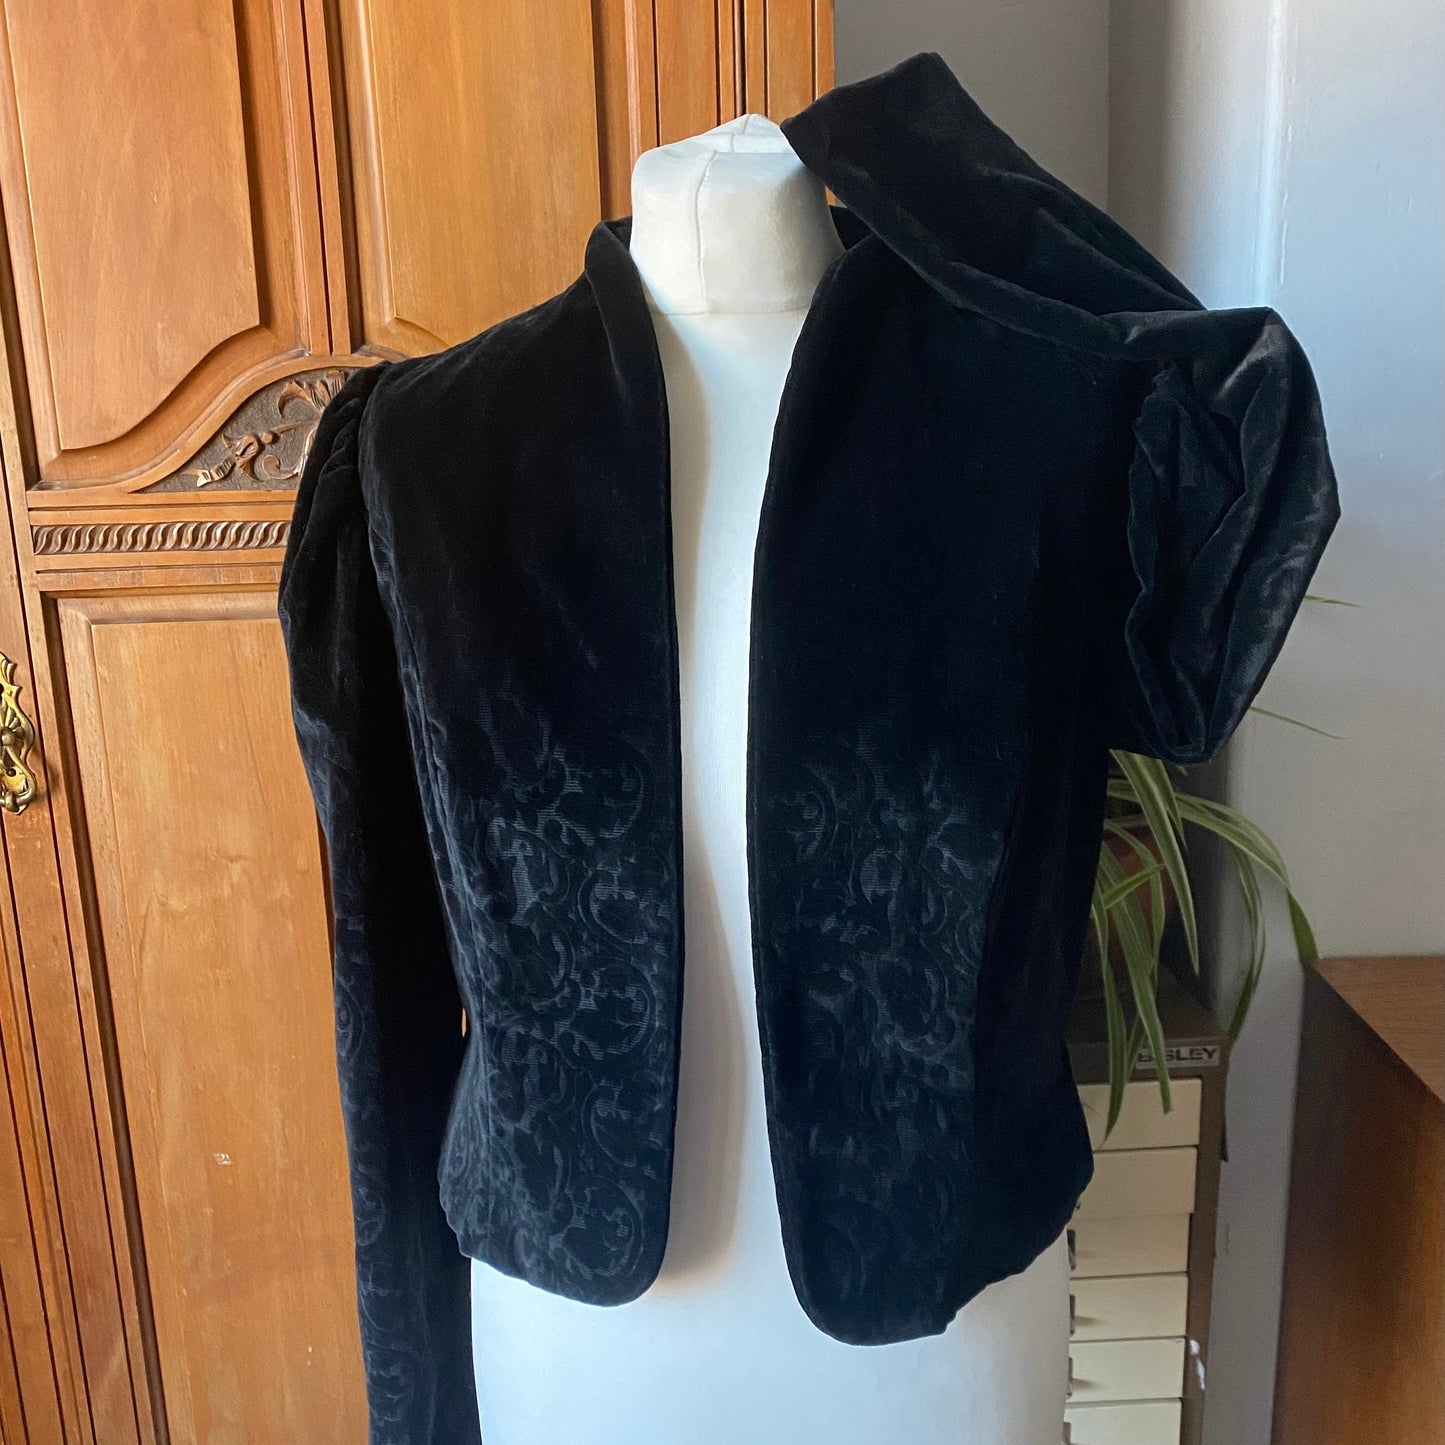 Vintage Austrian Dirndl Cropped Black Velvet Jacket. Approx U.K. size 8-12